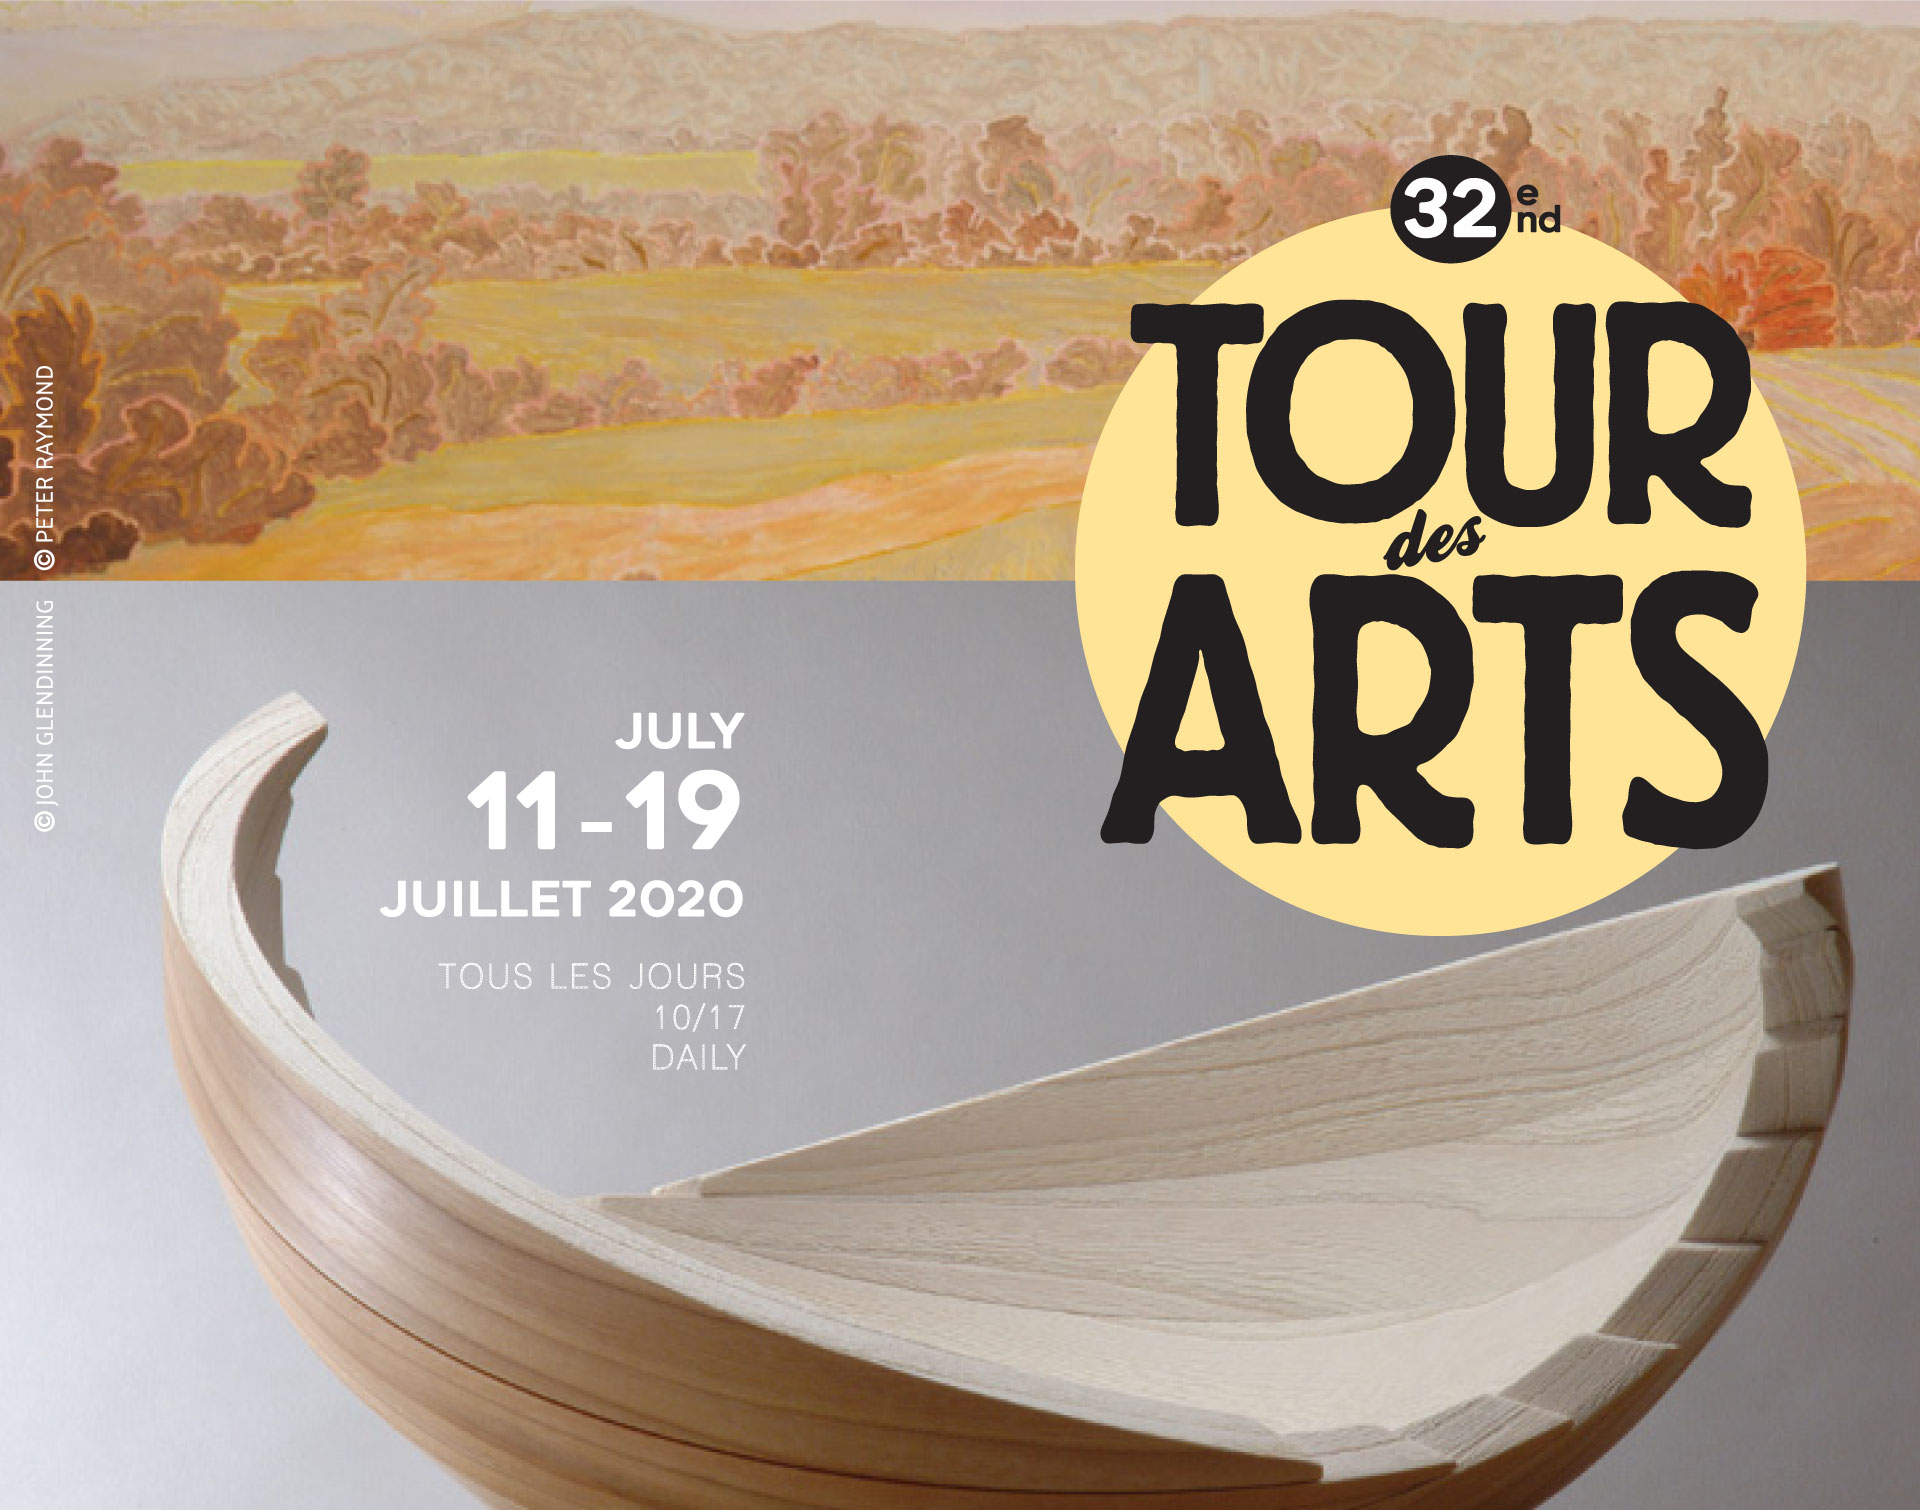 Tour des Arts 2020 - Arts Sutton